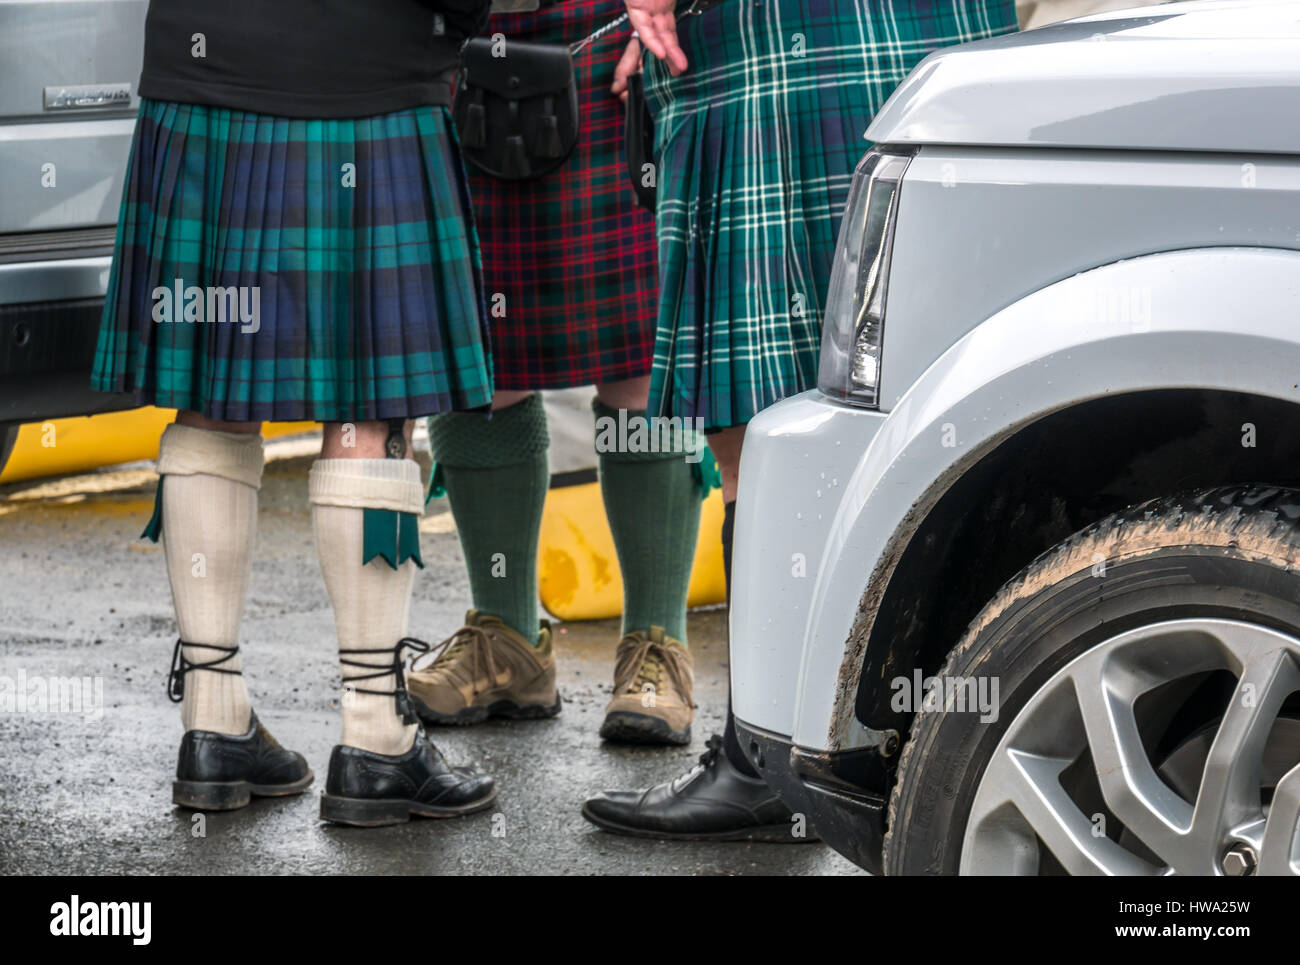 Nahaufnahme von drei Männer in Kilts neben 4 wheel drive Autos, als touristische Chauffeure handeln, North Berwick, East Lothian, Schottland, Großbritannien Stockfoto